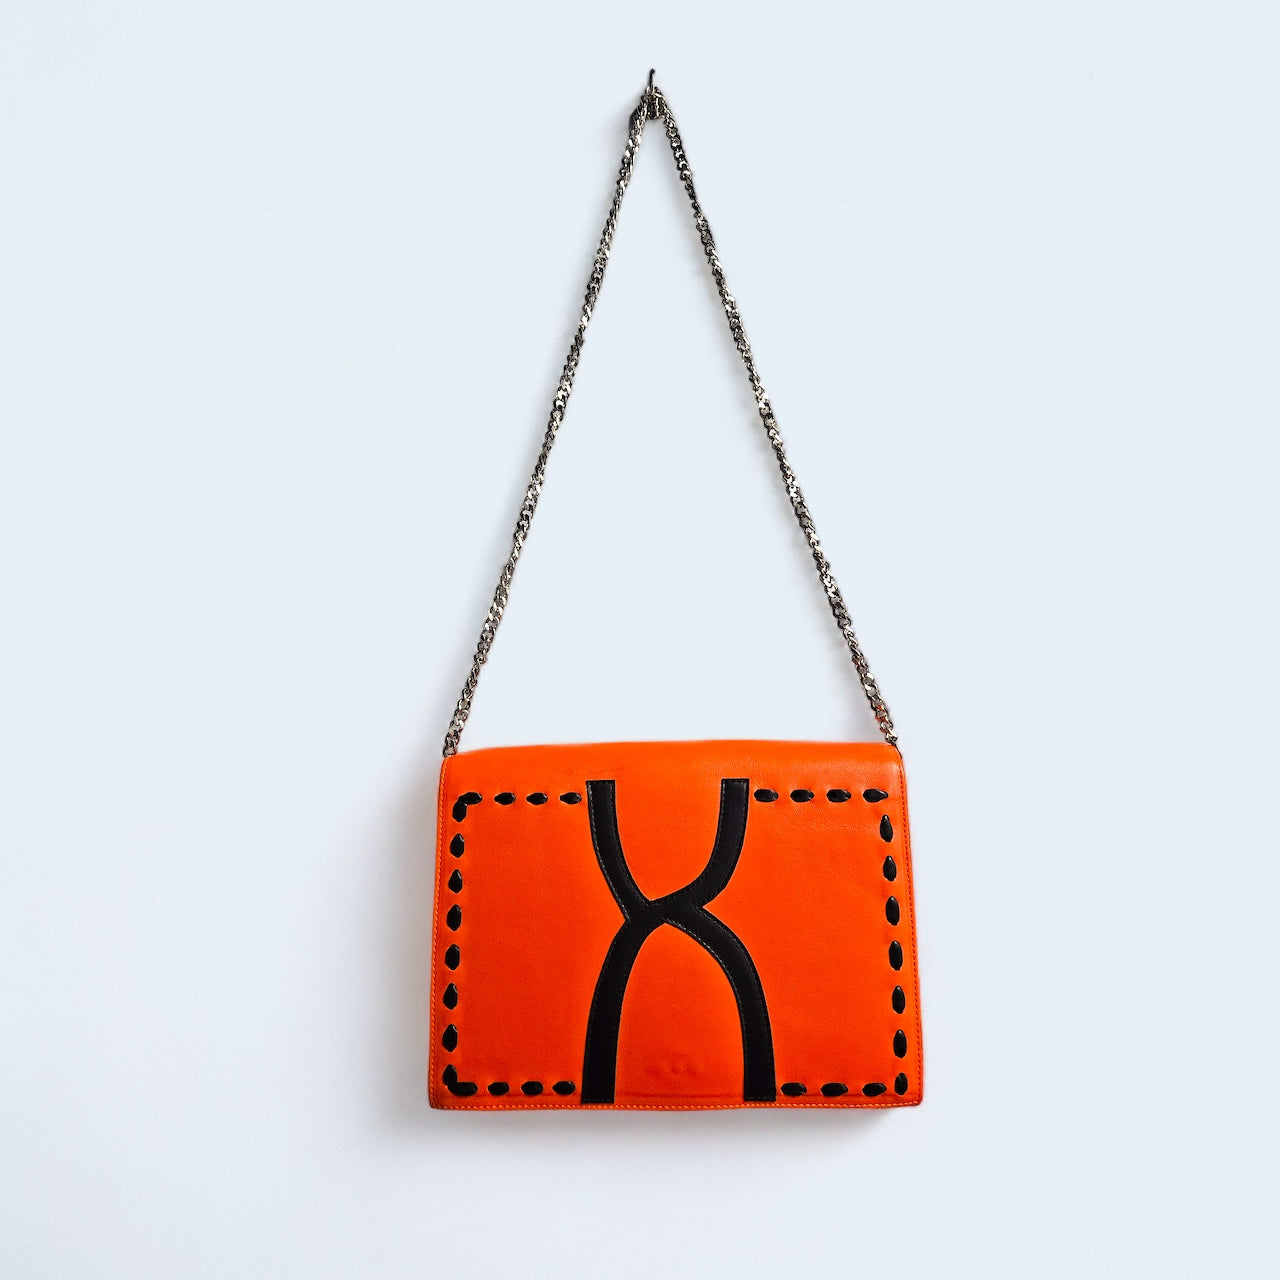 Orange chain shoulder bag